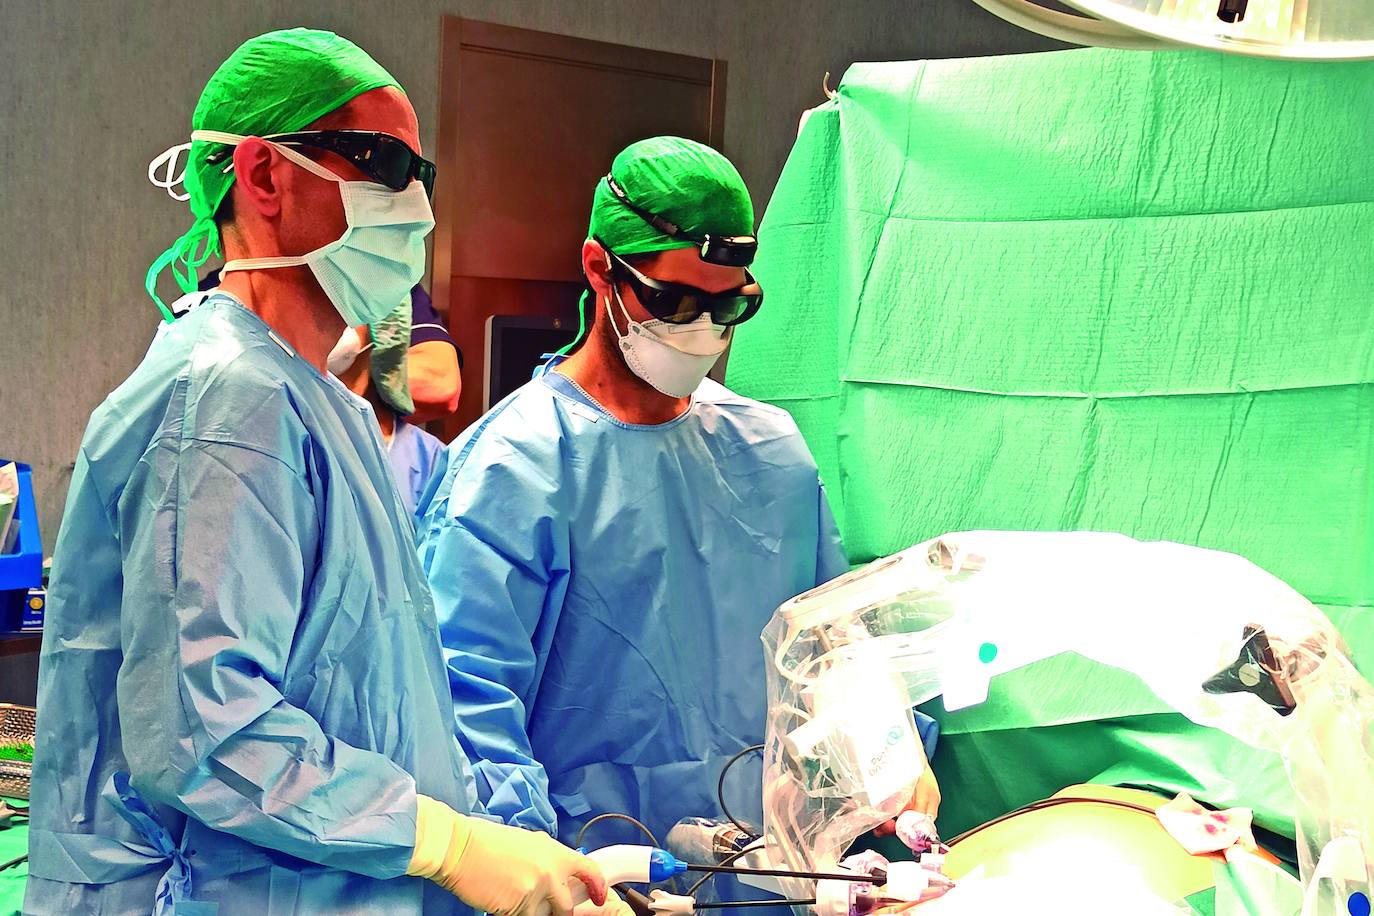 Intervención quirúrgica por laparoscopia conjunta del Dr. Pablo Juárezdel Dago y del Dr. Héctor Ajubita./